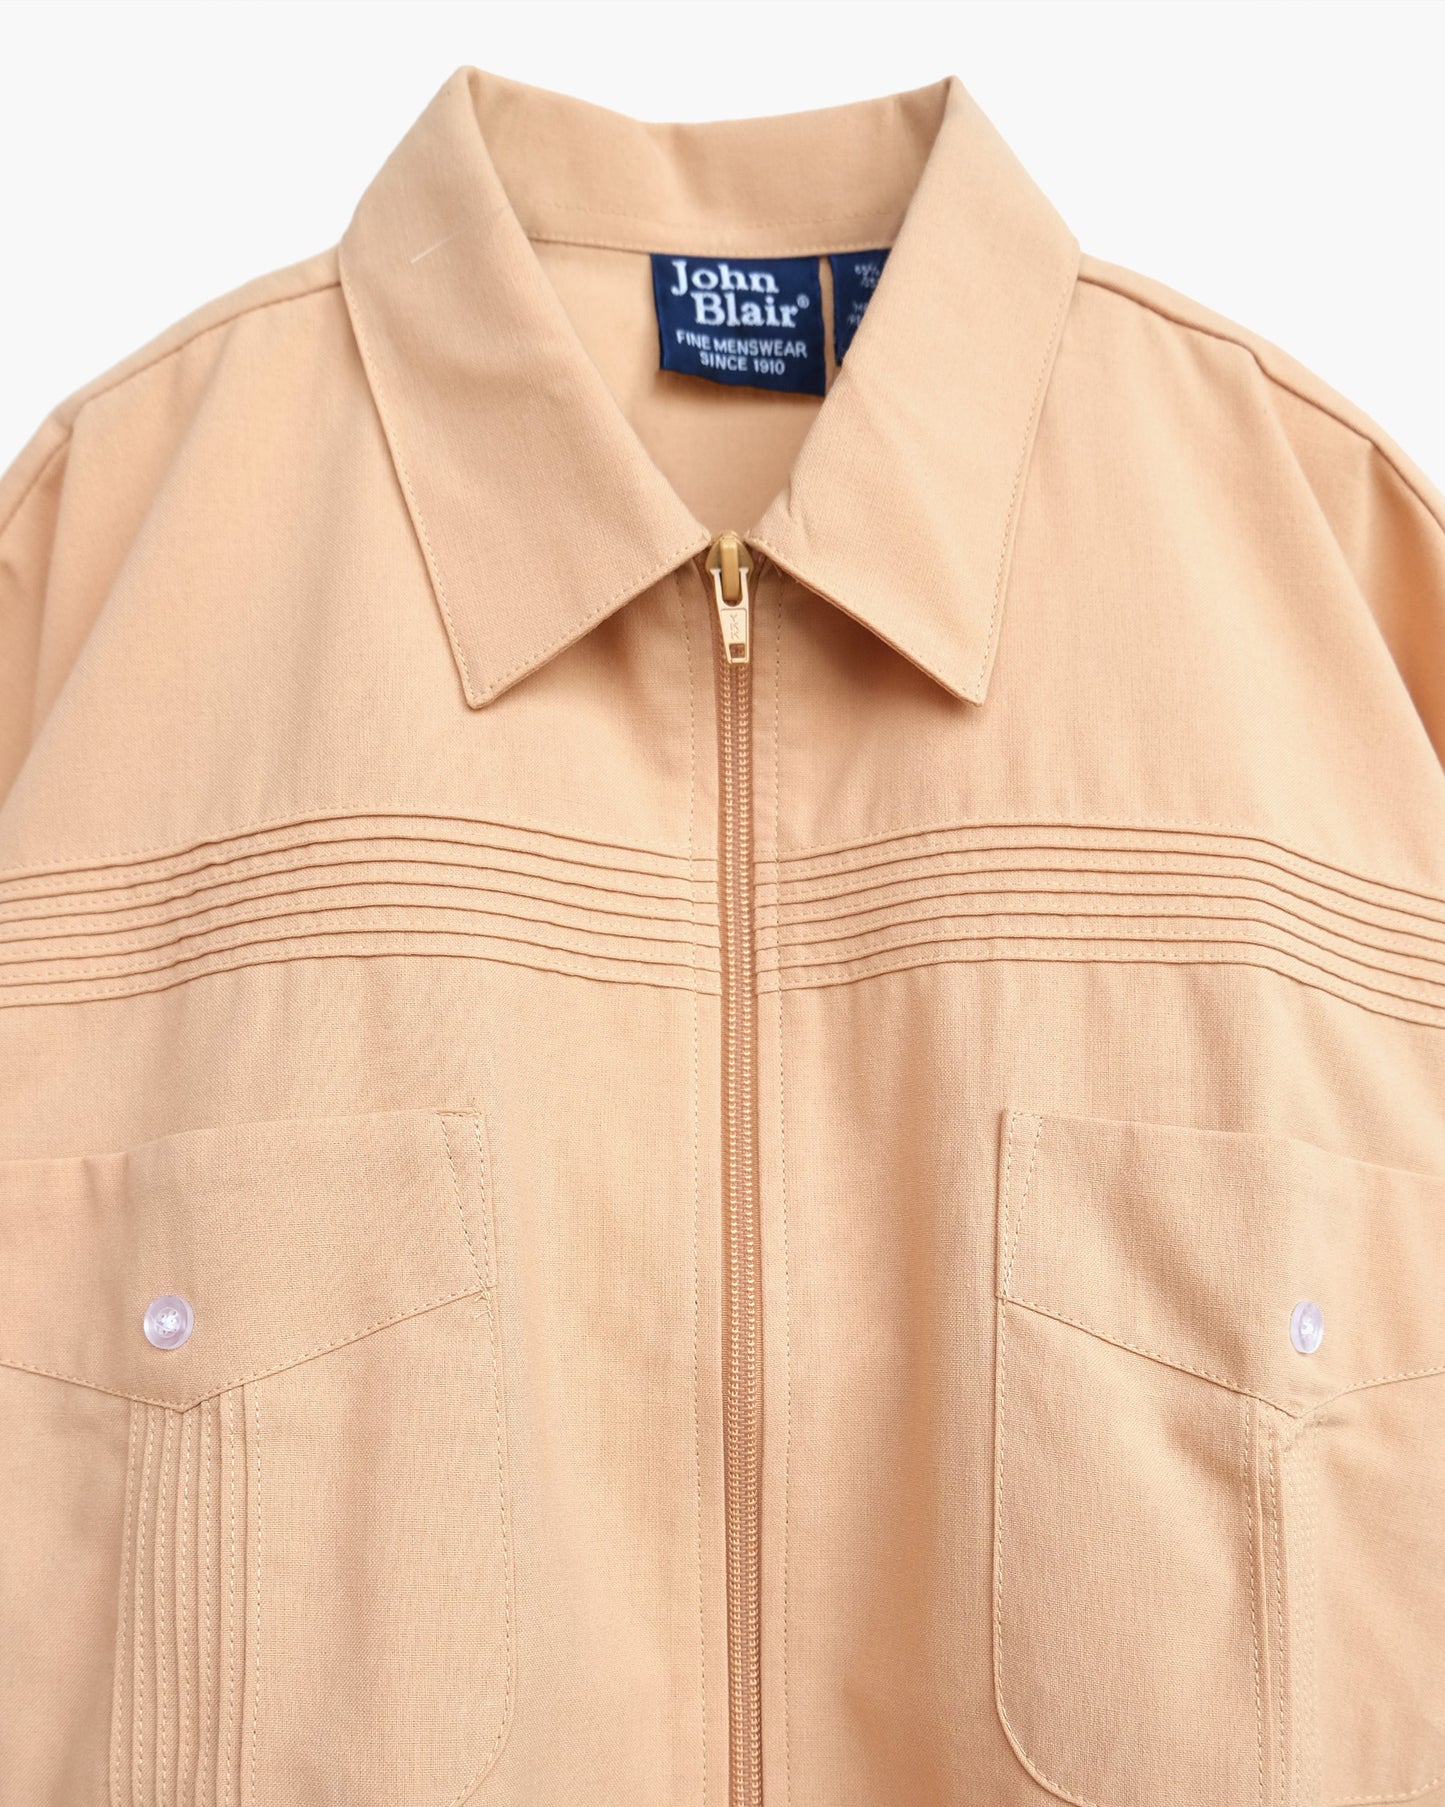 S/S Zip-Up Shirt Jacket